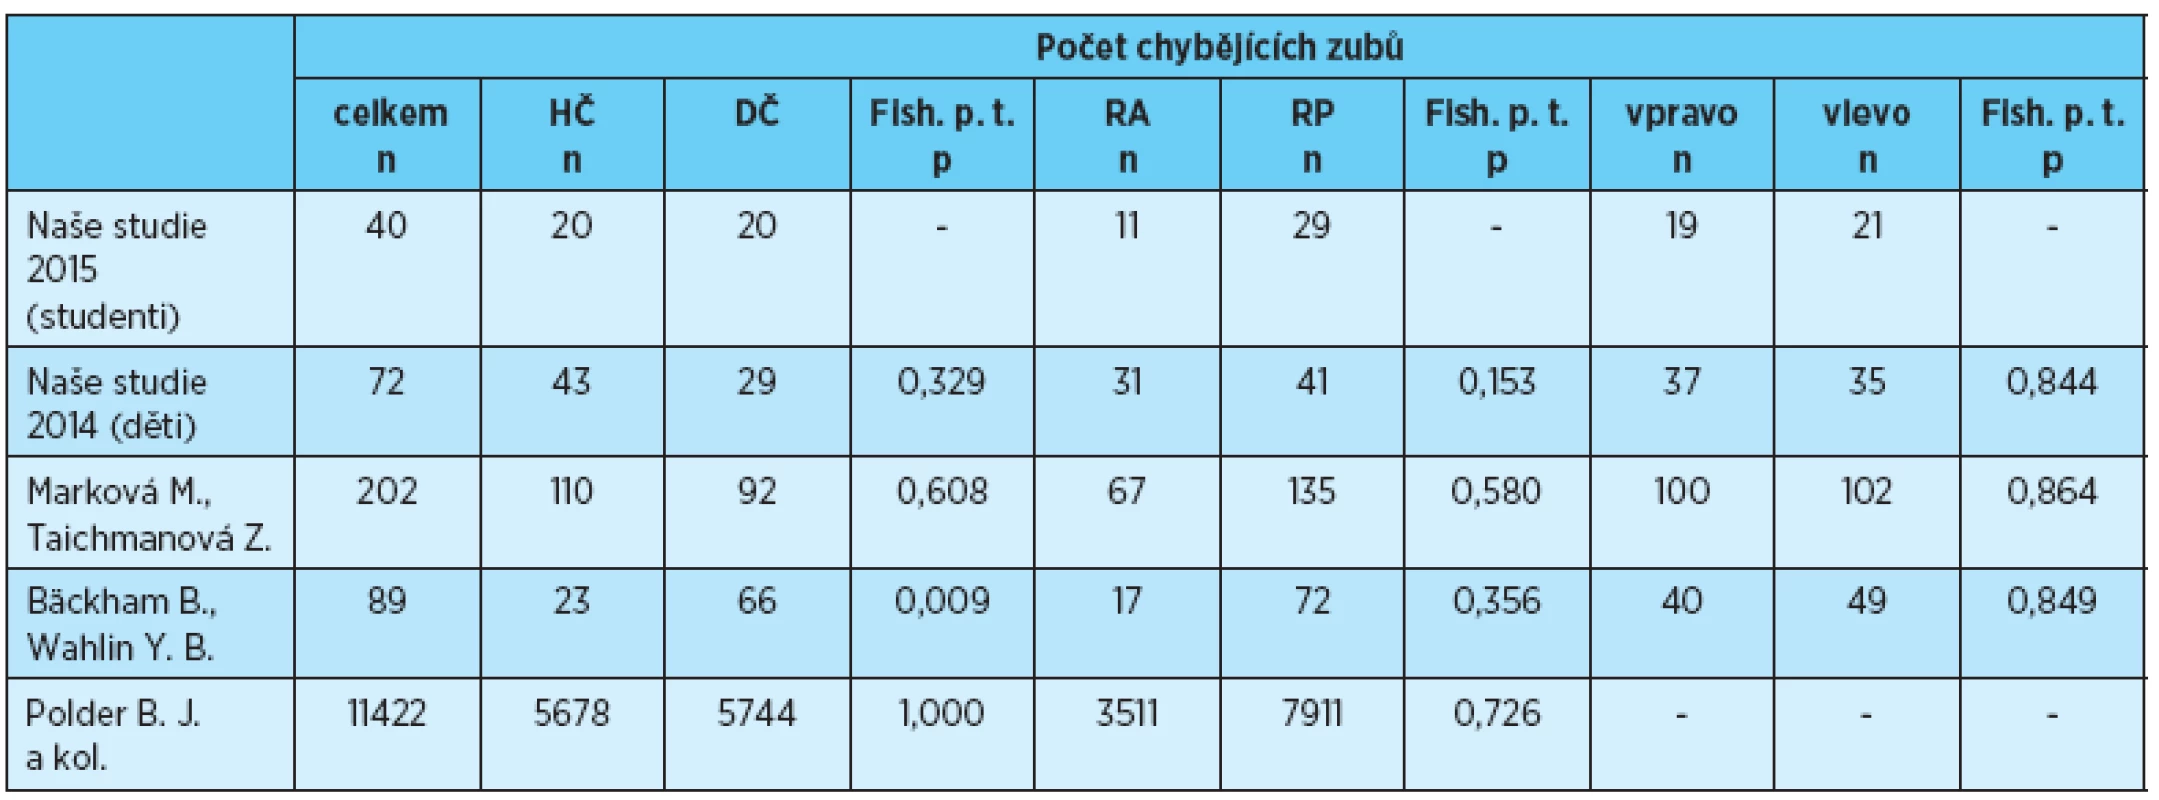 Počet chybějících zubů v jednotlivých lokalizacích, porovnání s výsledky uvedenými v literatuře [1, 2, 3, 4]